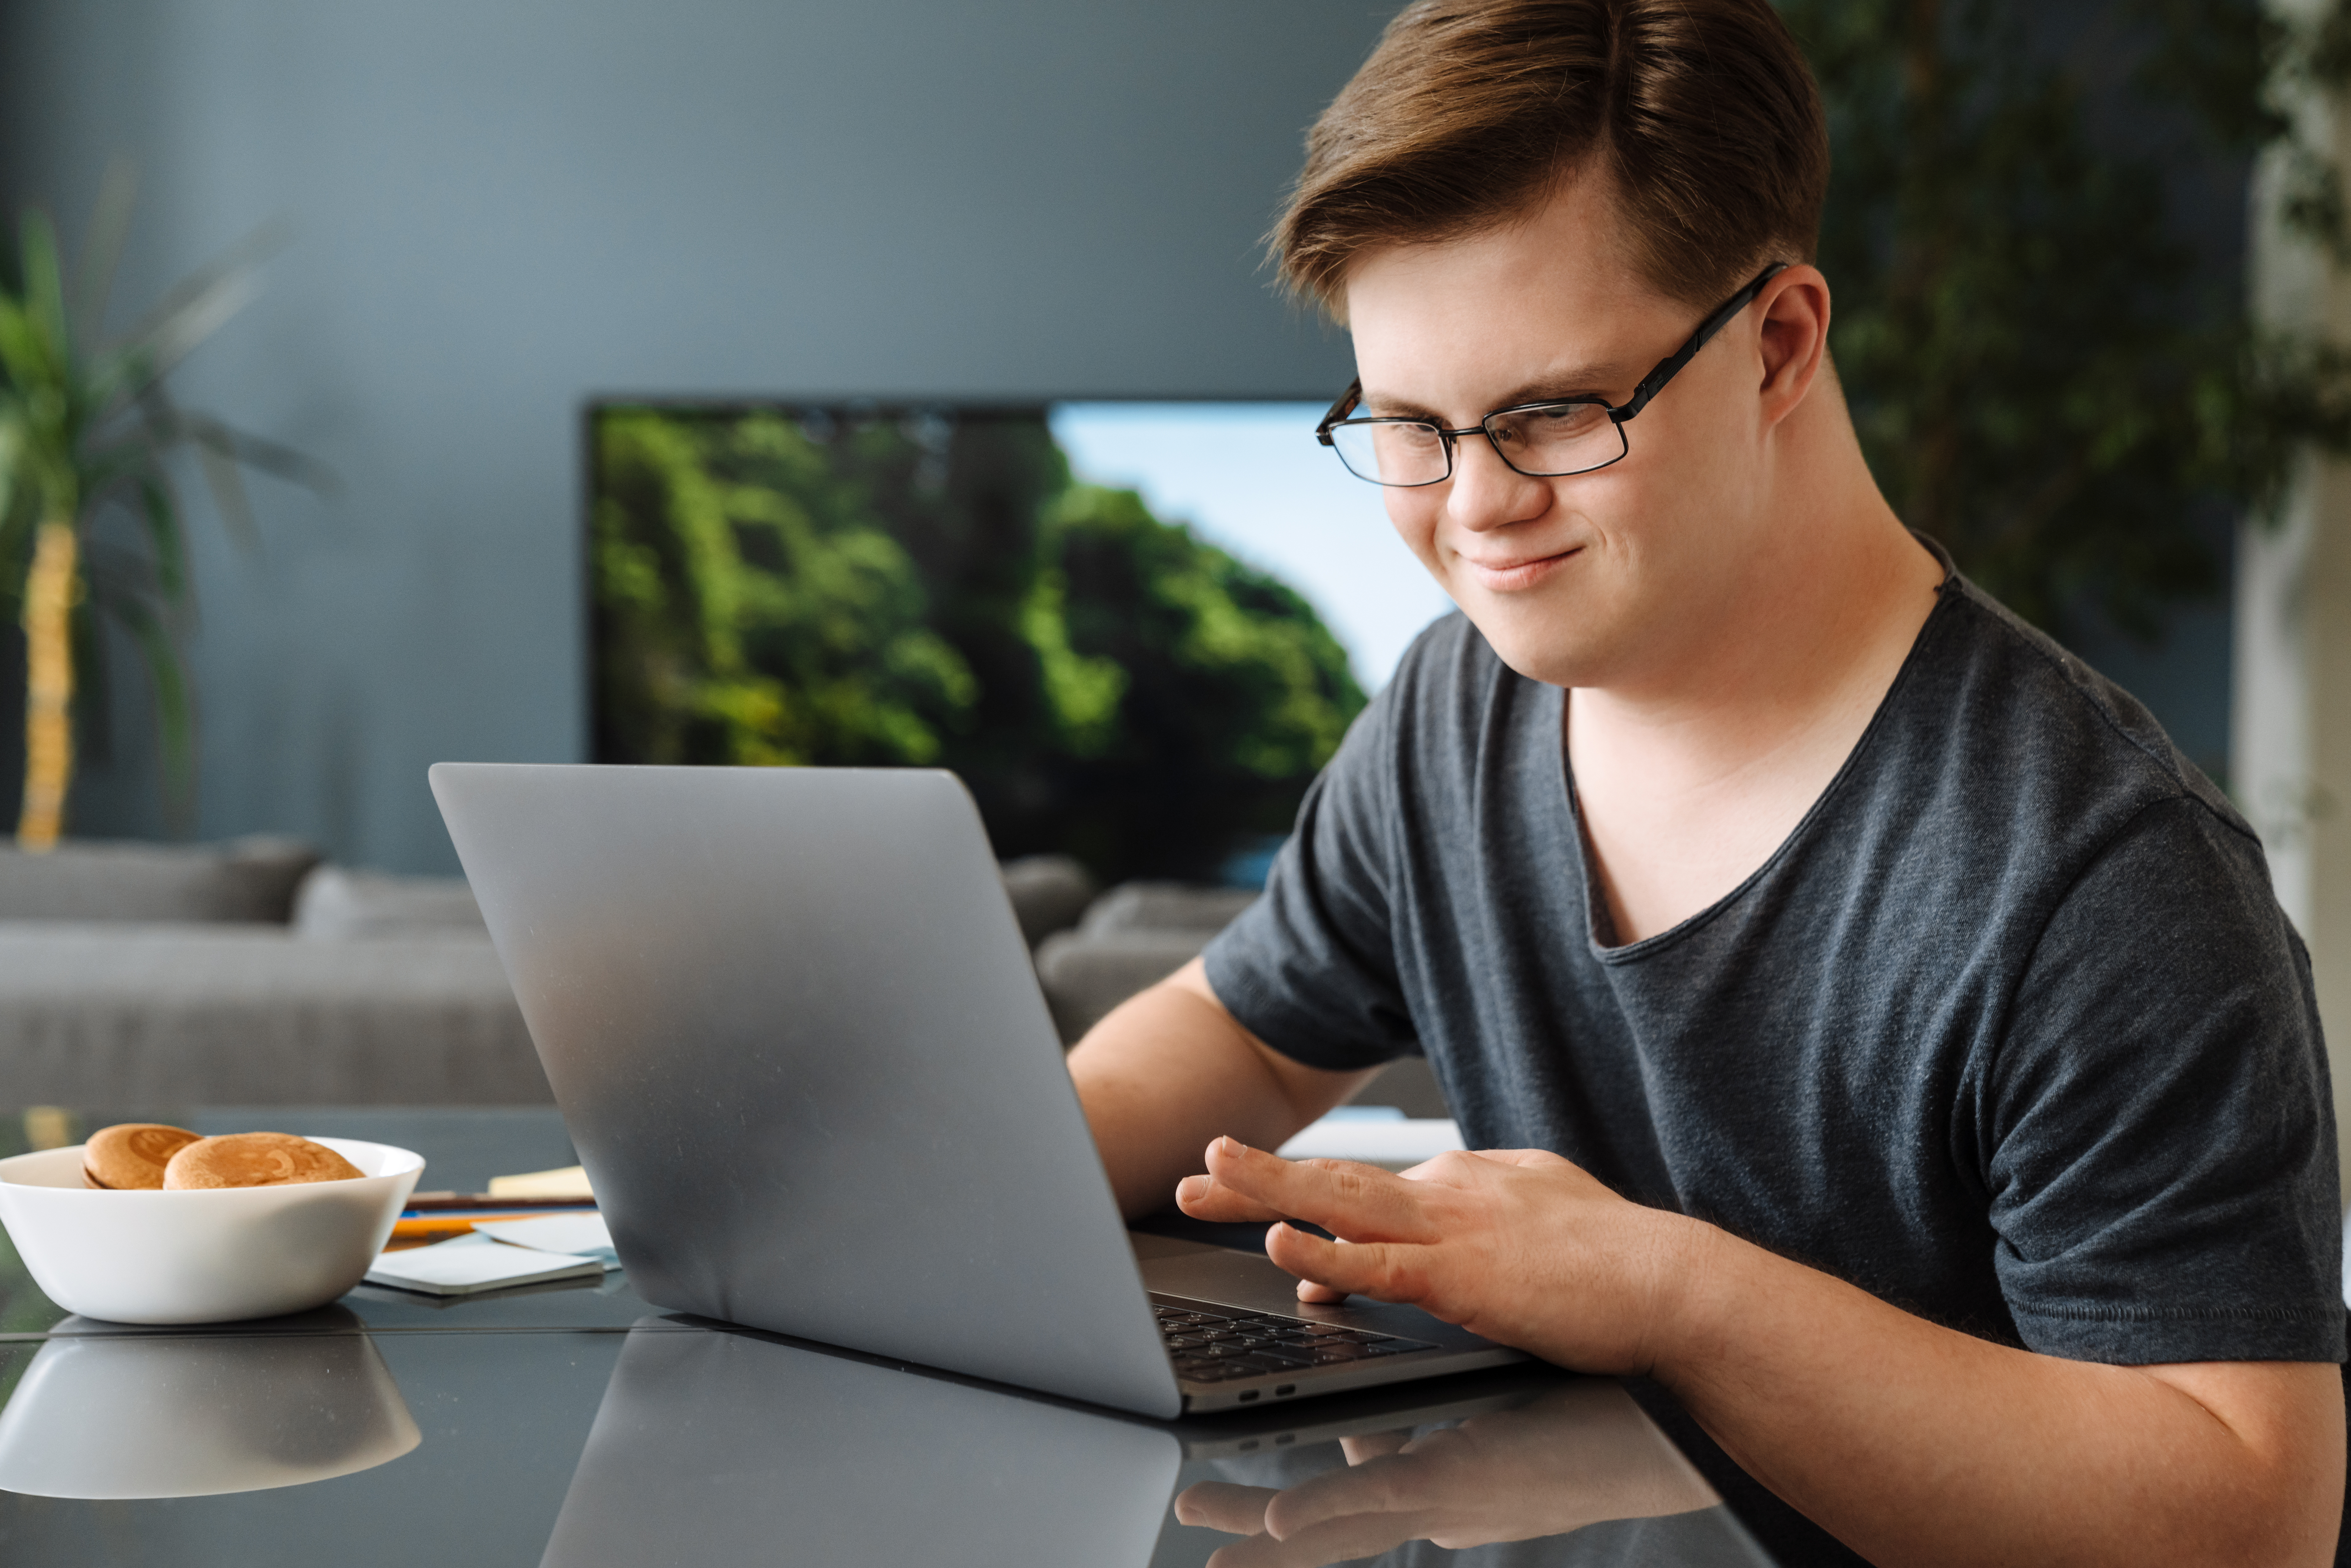 Ein Mann mit Down-Syndrom arbeitet an seinem Laptop. | Quelle: Shutterstock